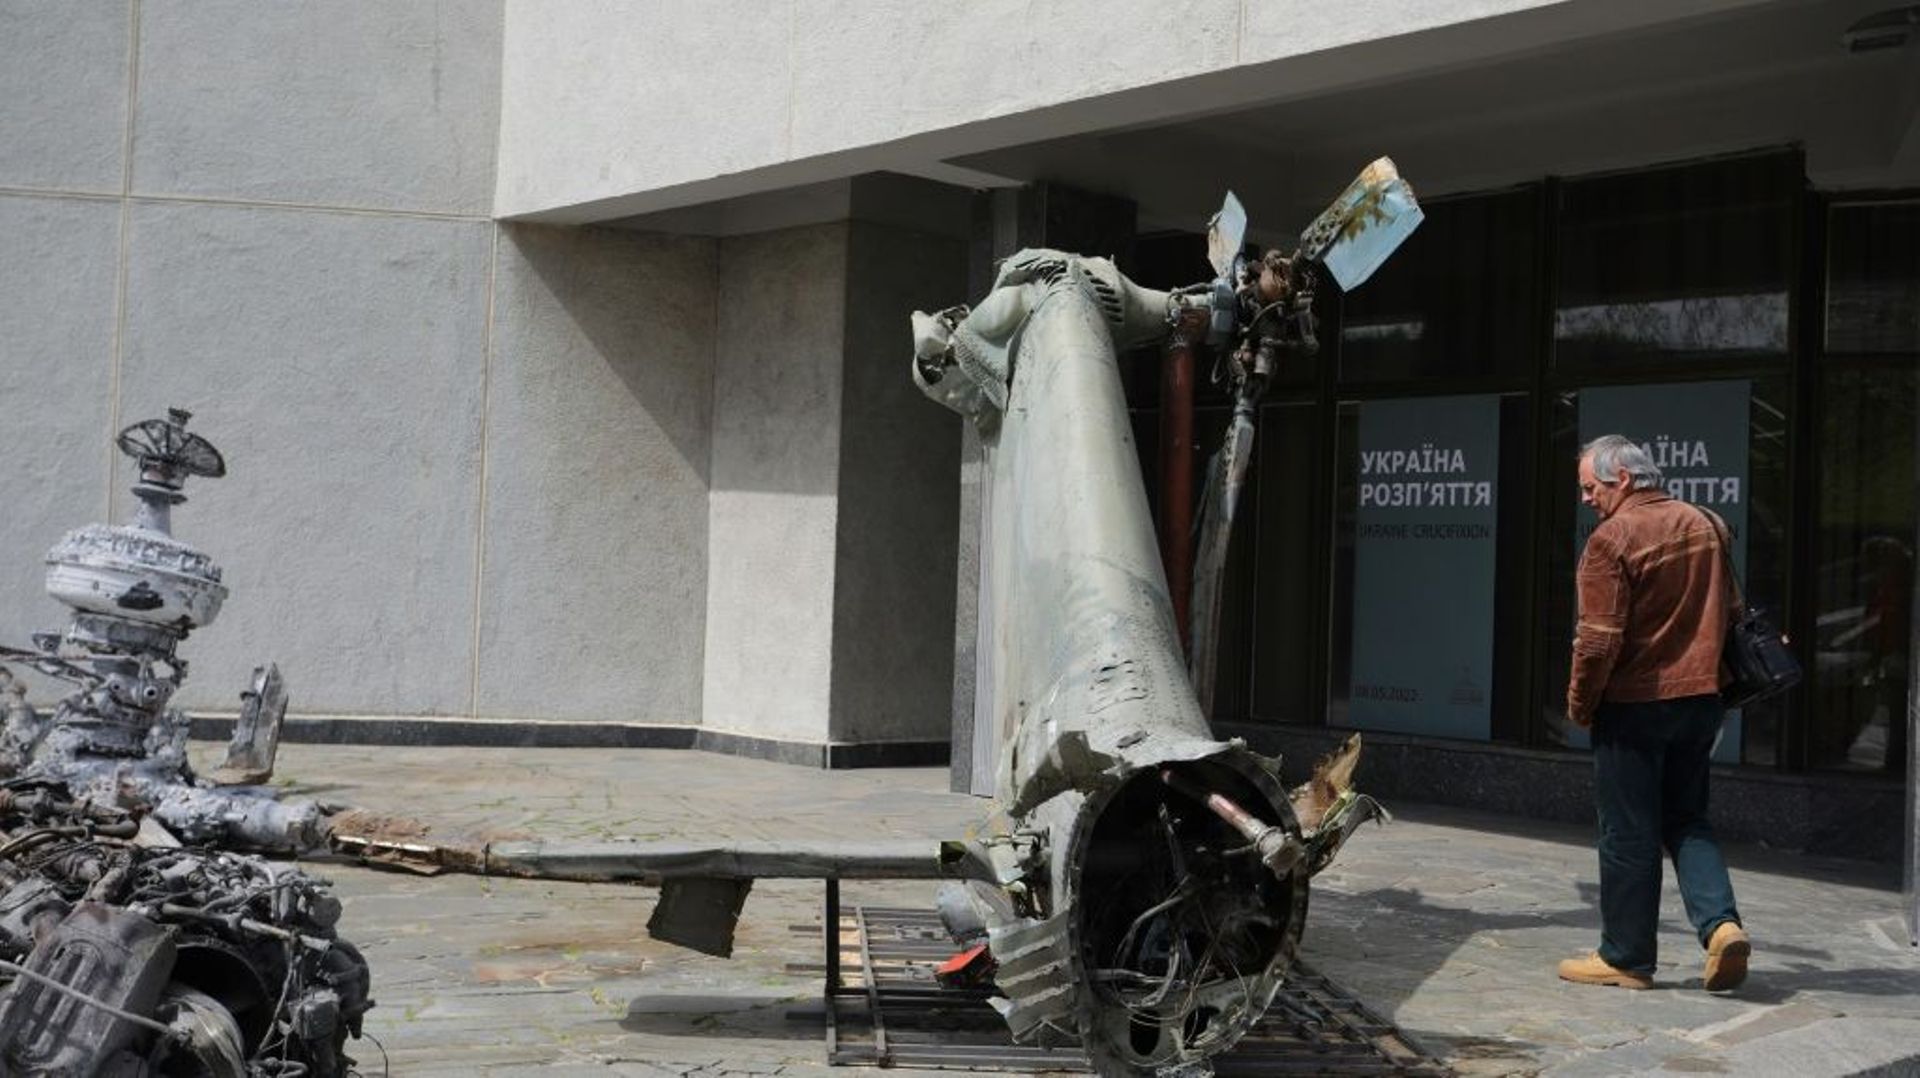 Un homme passe près d'un hélicoptère russe détruit récemment durant la guerre entre l'Ukraine et la Russie, au musée de la Seconde Guerre mondiale à Kiev, le 8 mai 2022